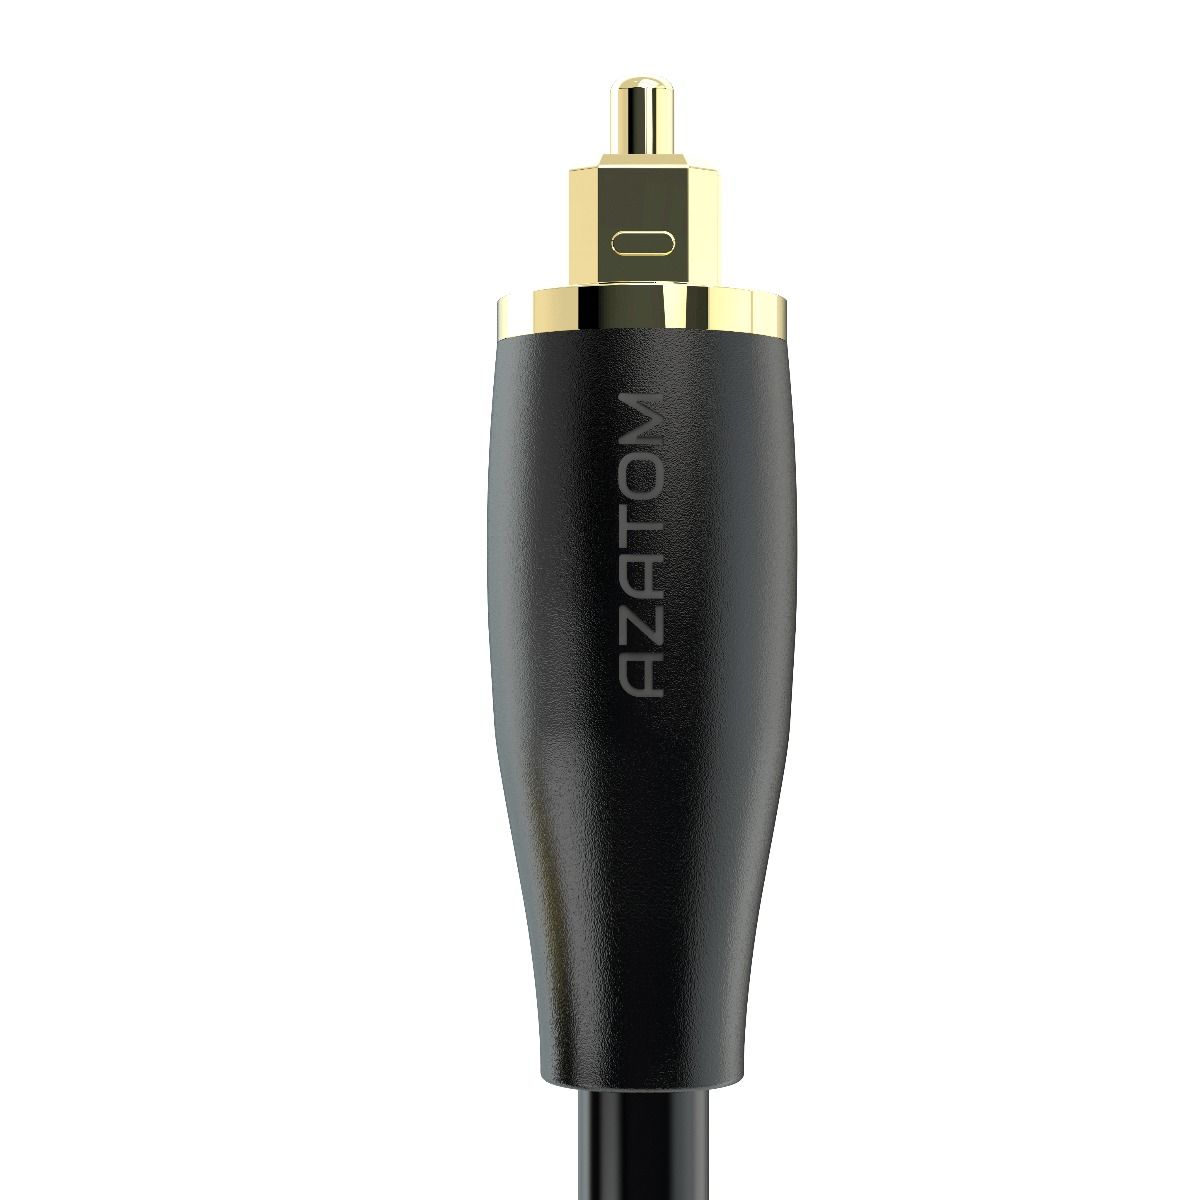 Thomson Câble fibre optique audio, connecteur ODT (Toslink), 3 m Câble audio  – acheter chez